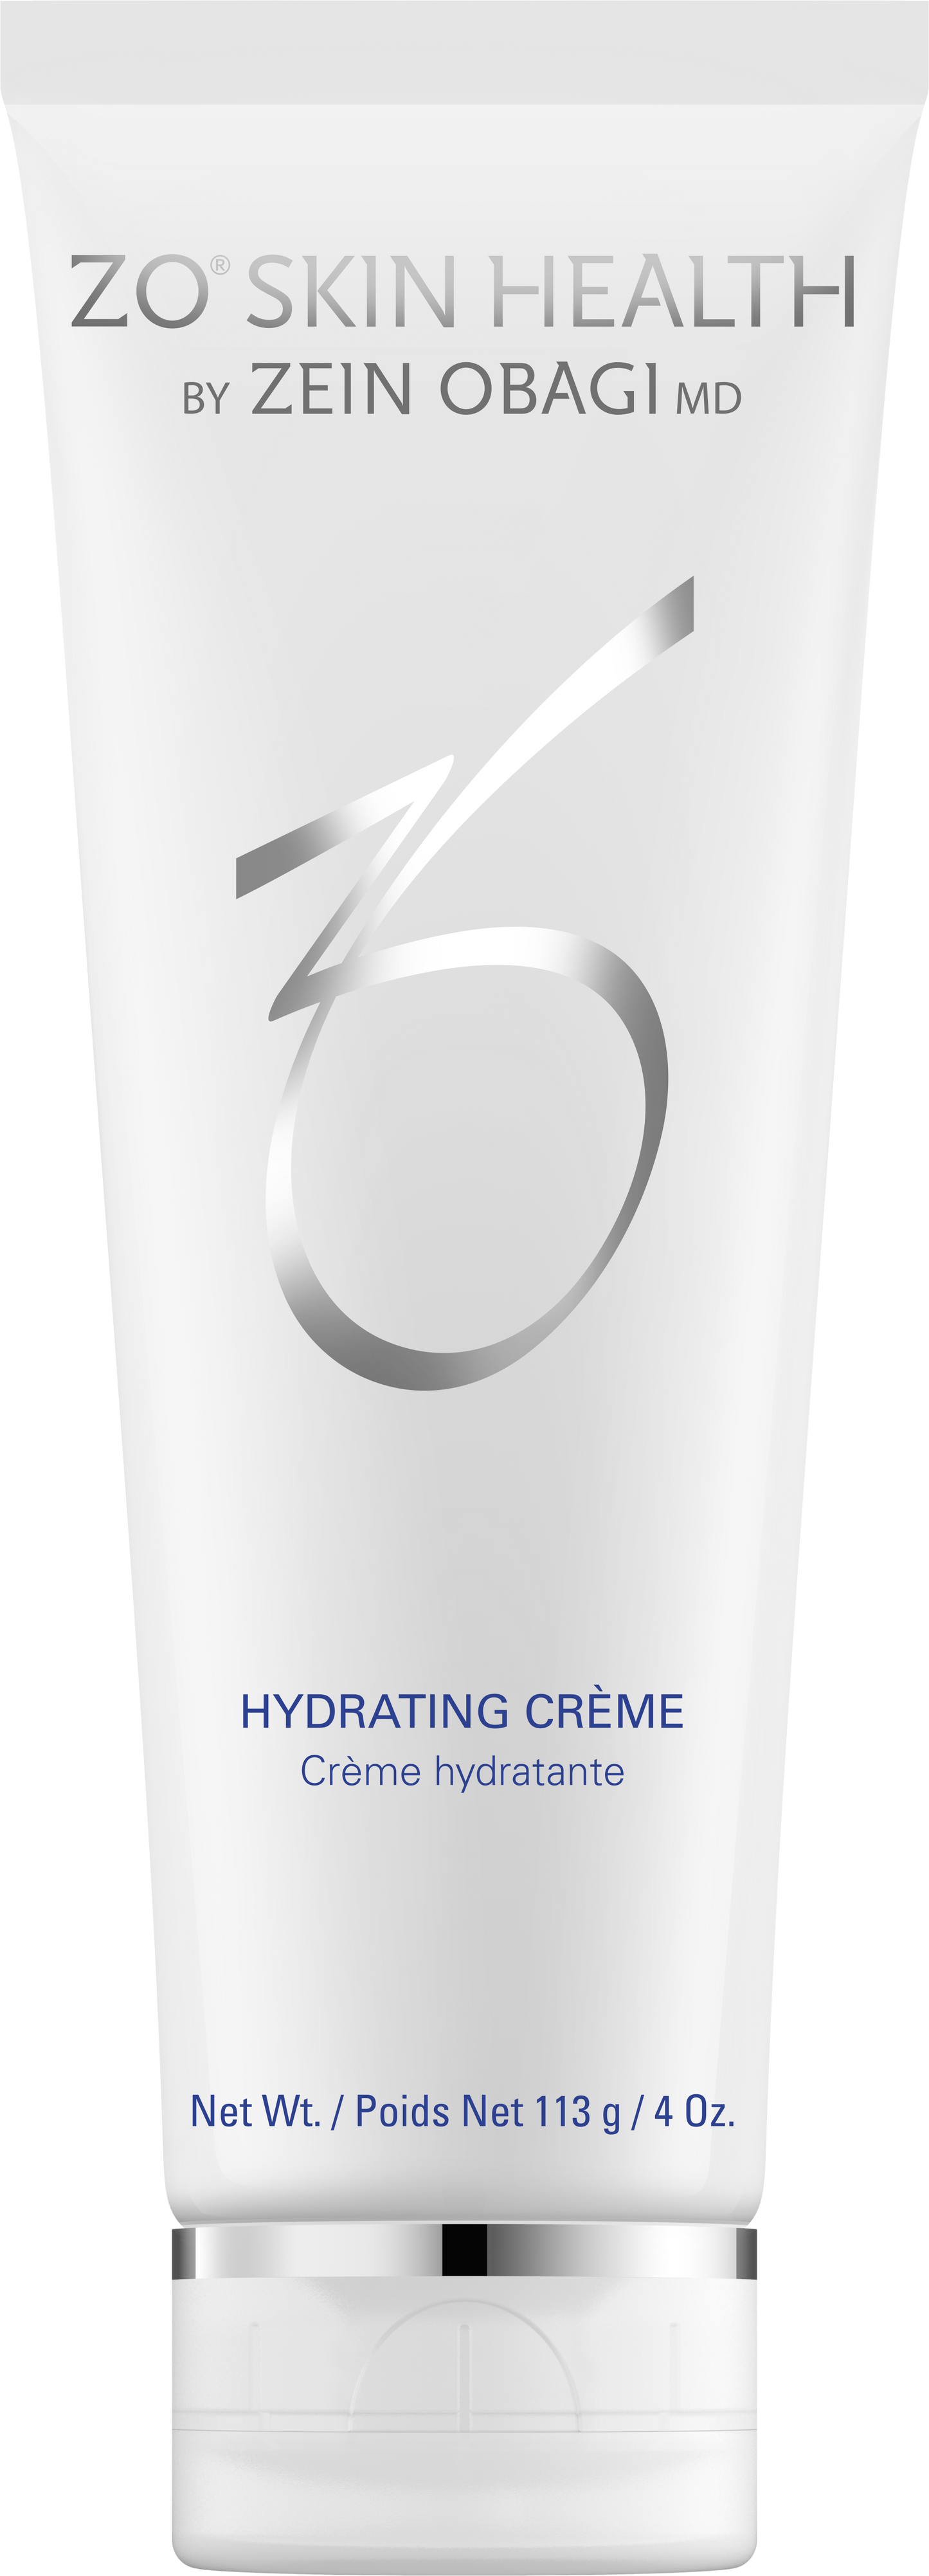 Hydrating Crème